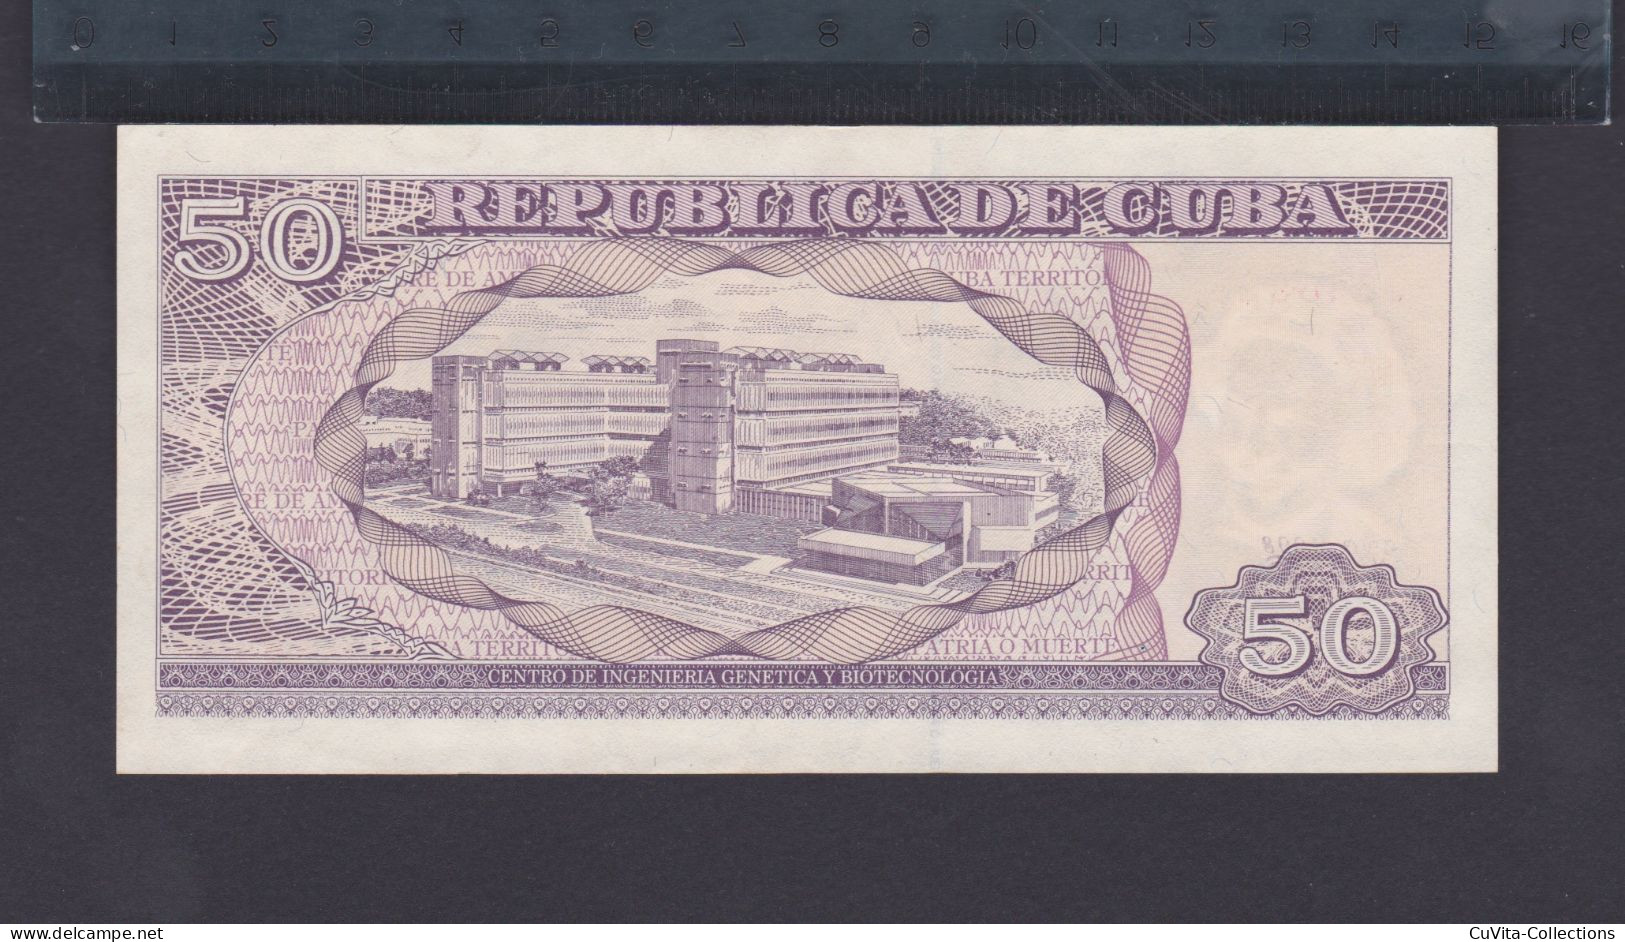 CUBA 50 PESOS 1998 EBC+/AU (Año Muy Dificil De Encontrar EN ESTAS CONDICIONES) - Cuba